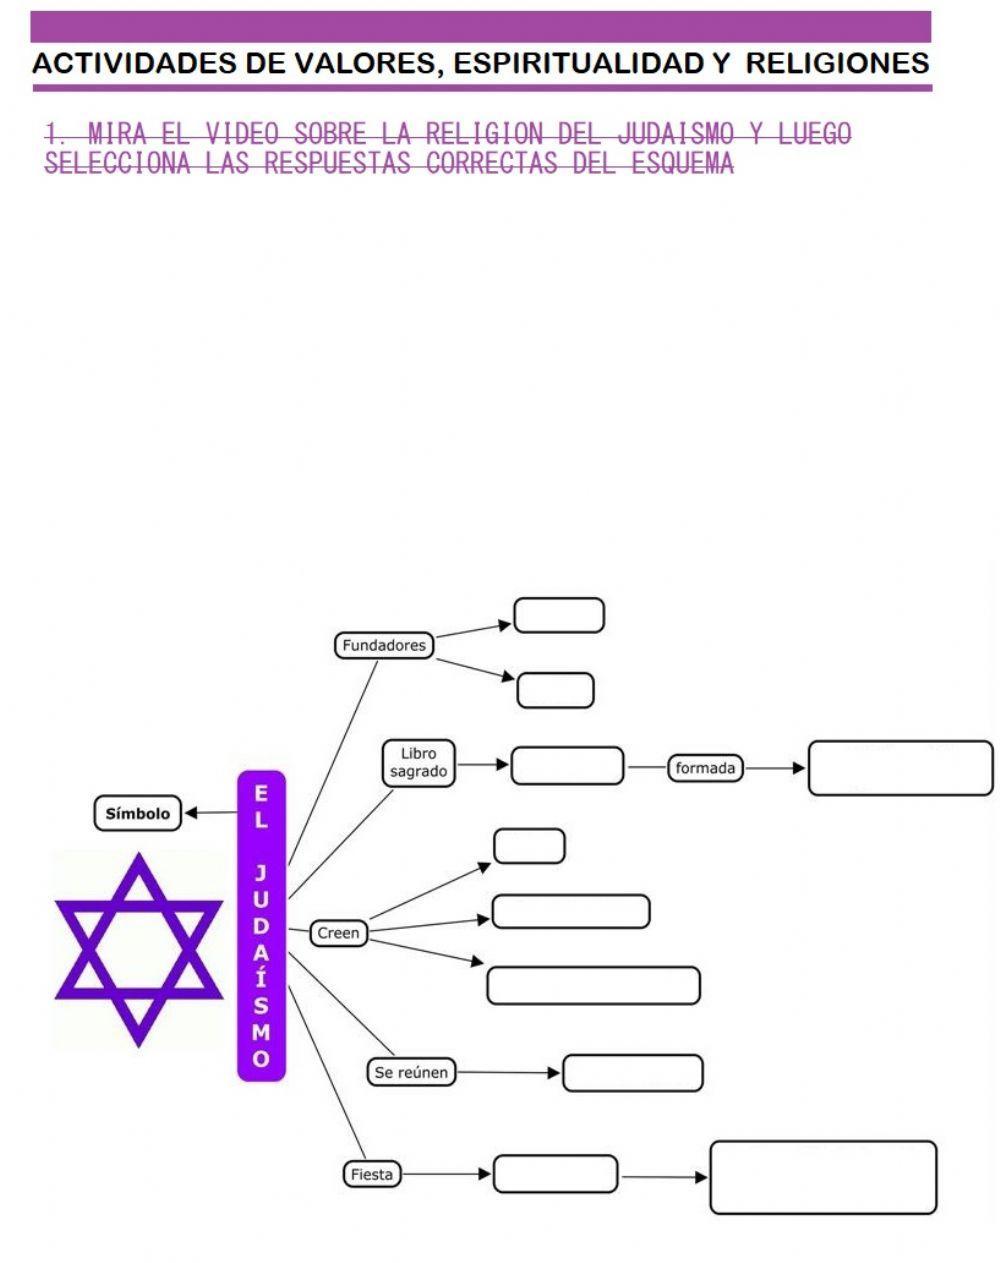 Religion del Judaismo